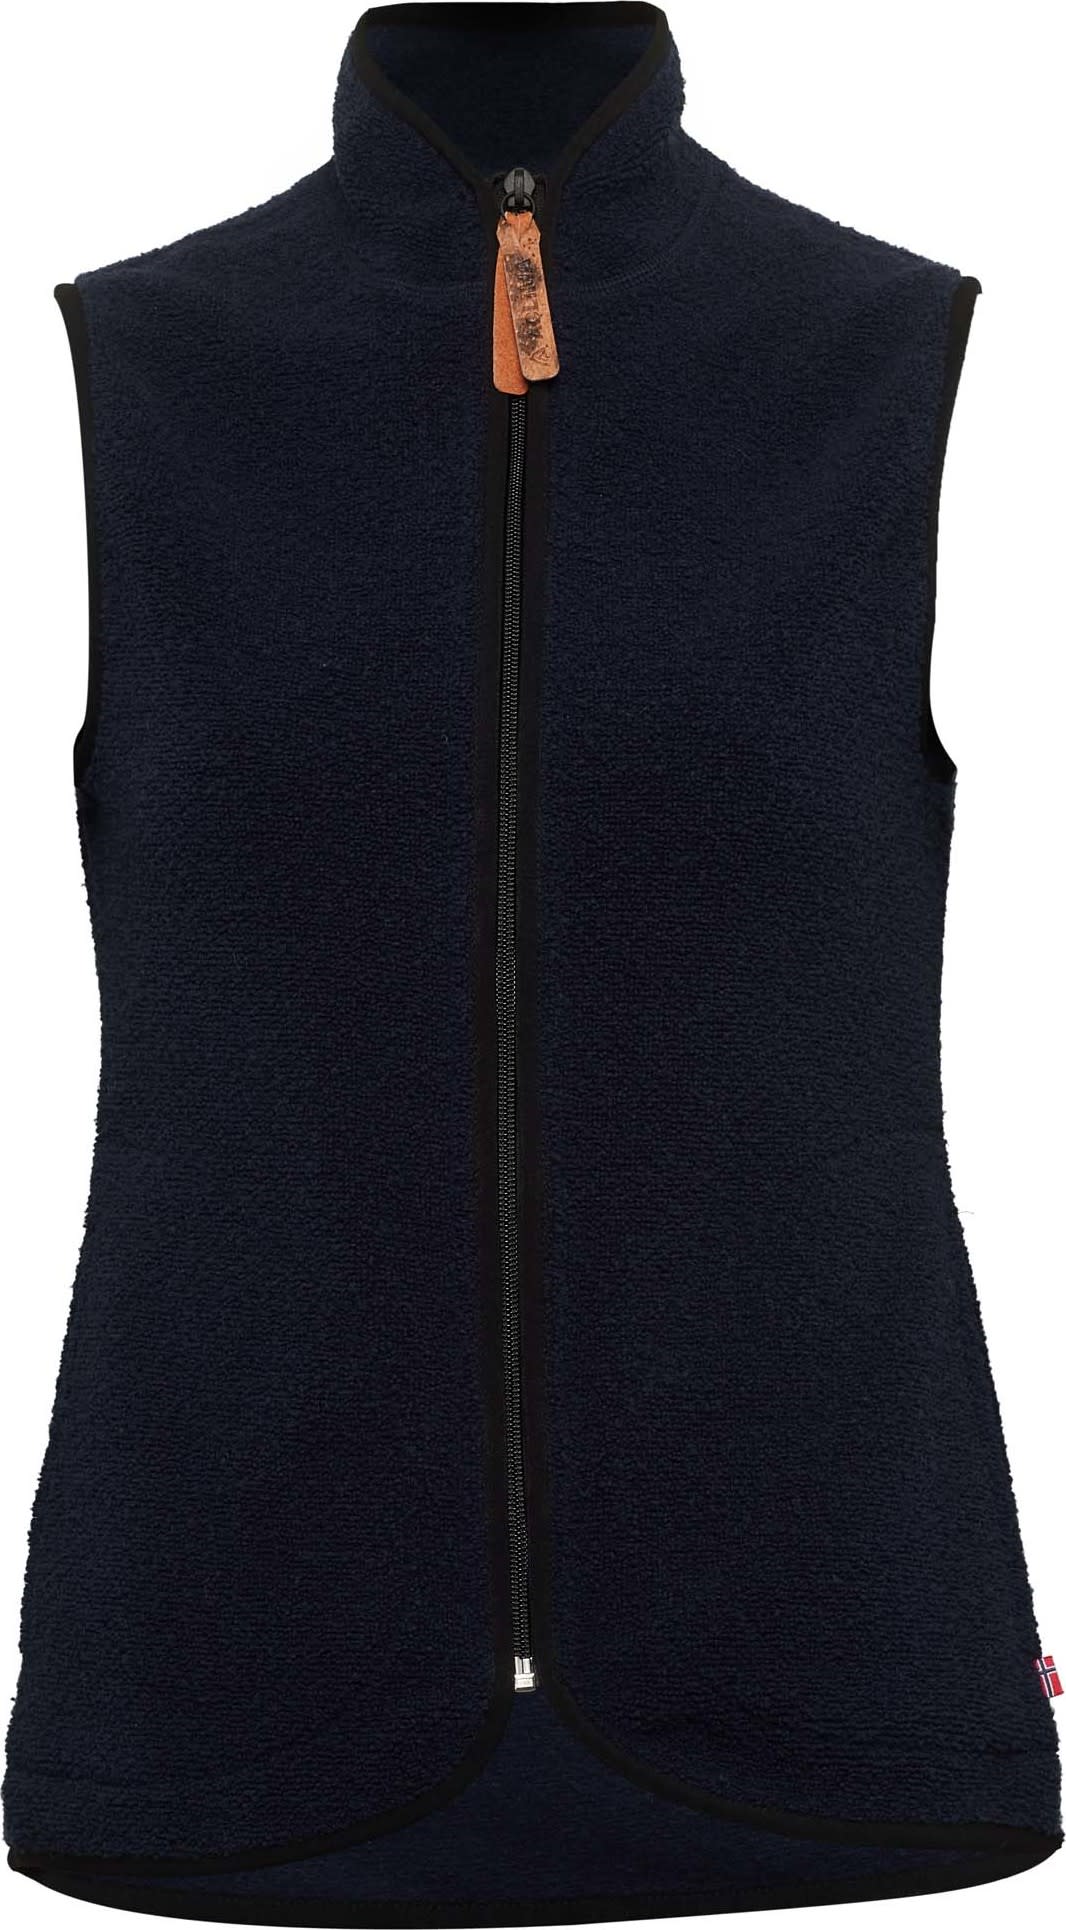 Wfs Women's Vest - Explore China Wholesale Women's Knitted Vest